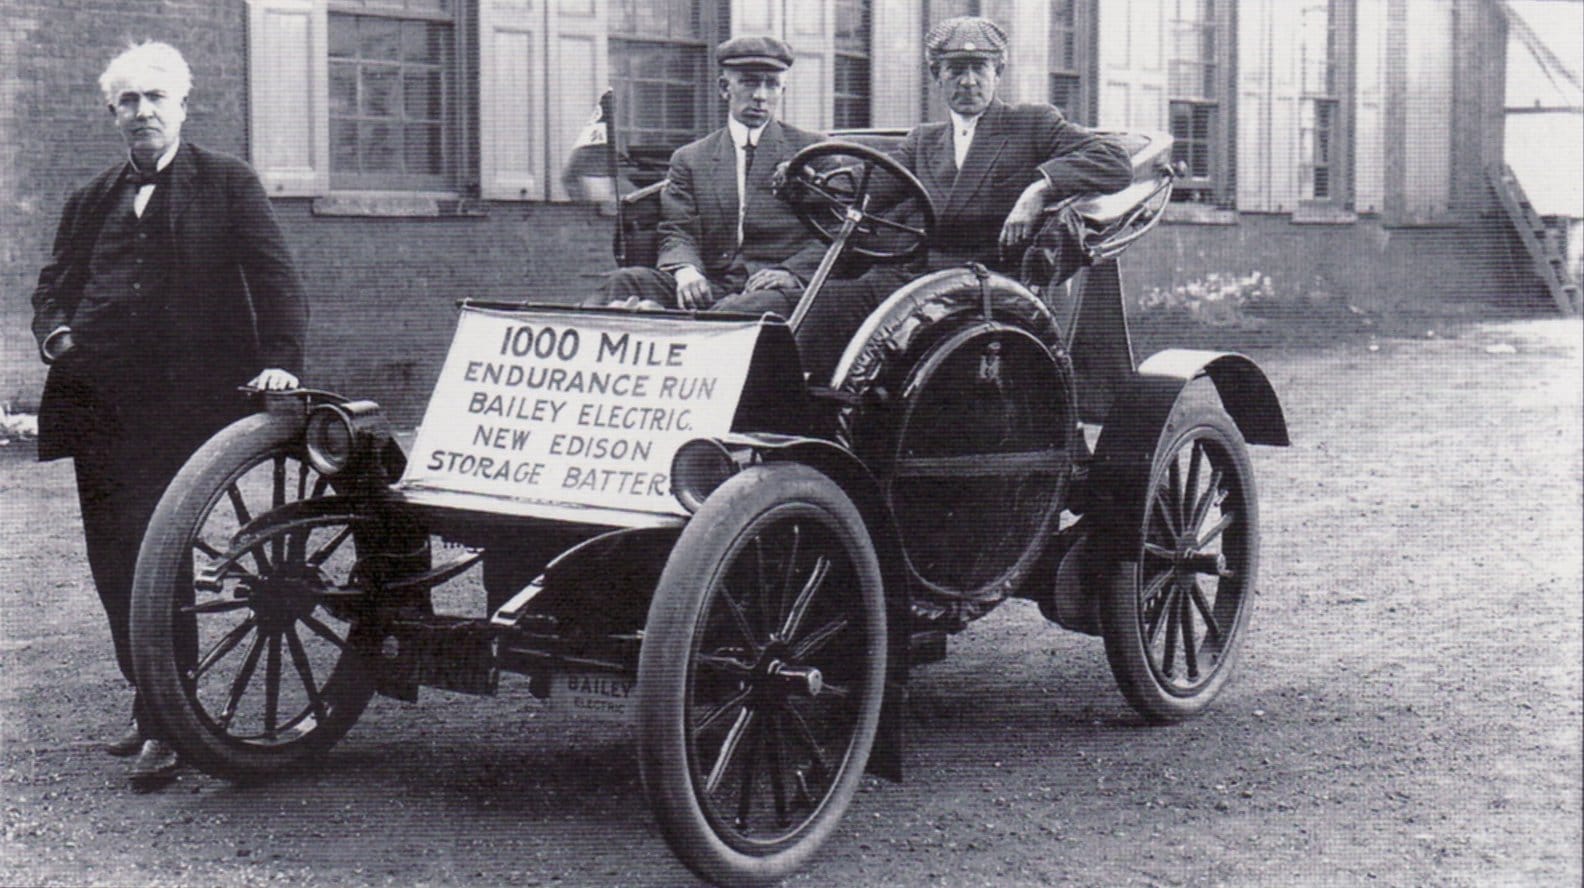  "توماسأديسون" يحصل علىبراء اختراع خاصةبالسيارات (1918)